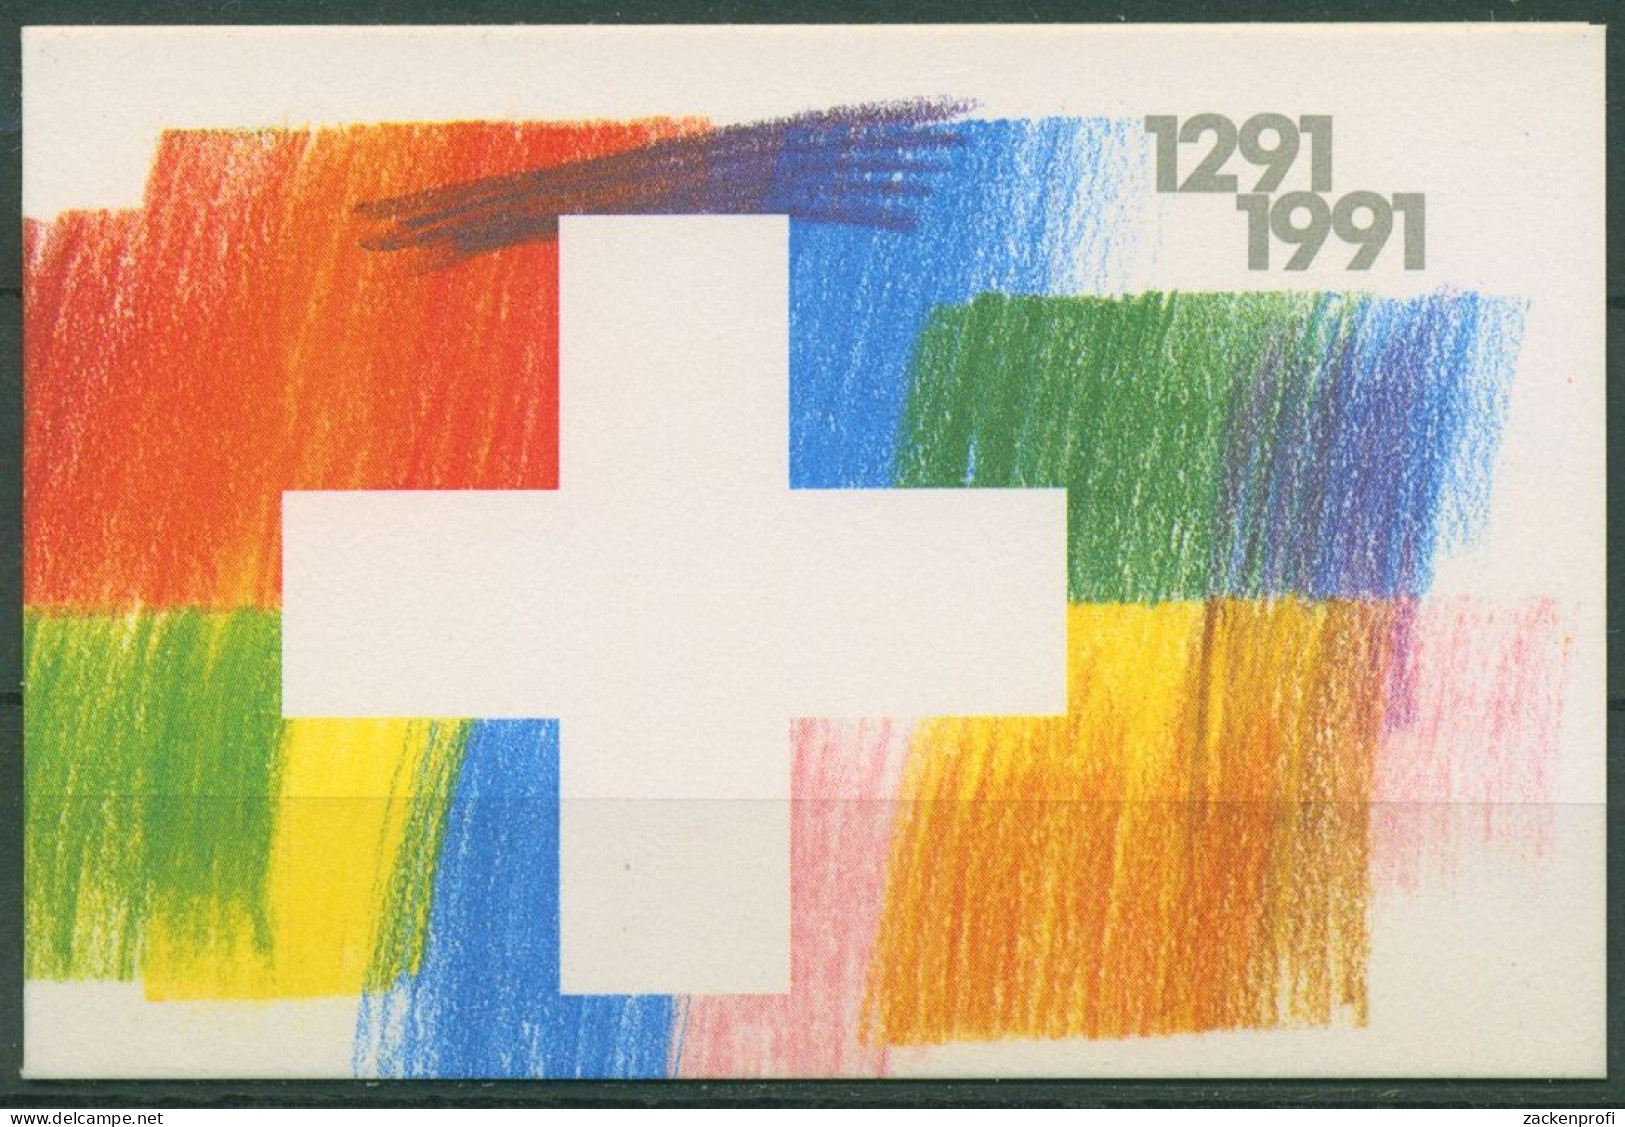 Schweiz 1991 Eidgenossenschaft Markenheftchen 89 Postfrisch (C62174) - Markenheftchen